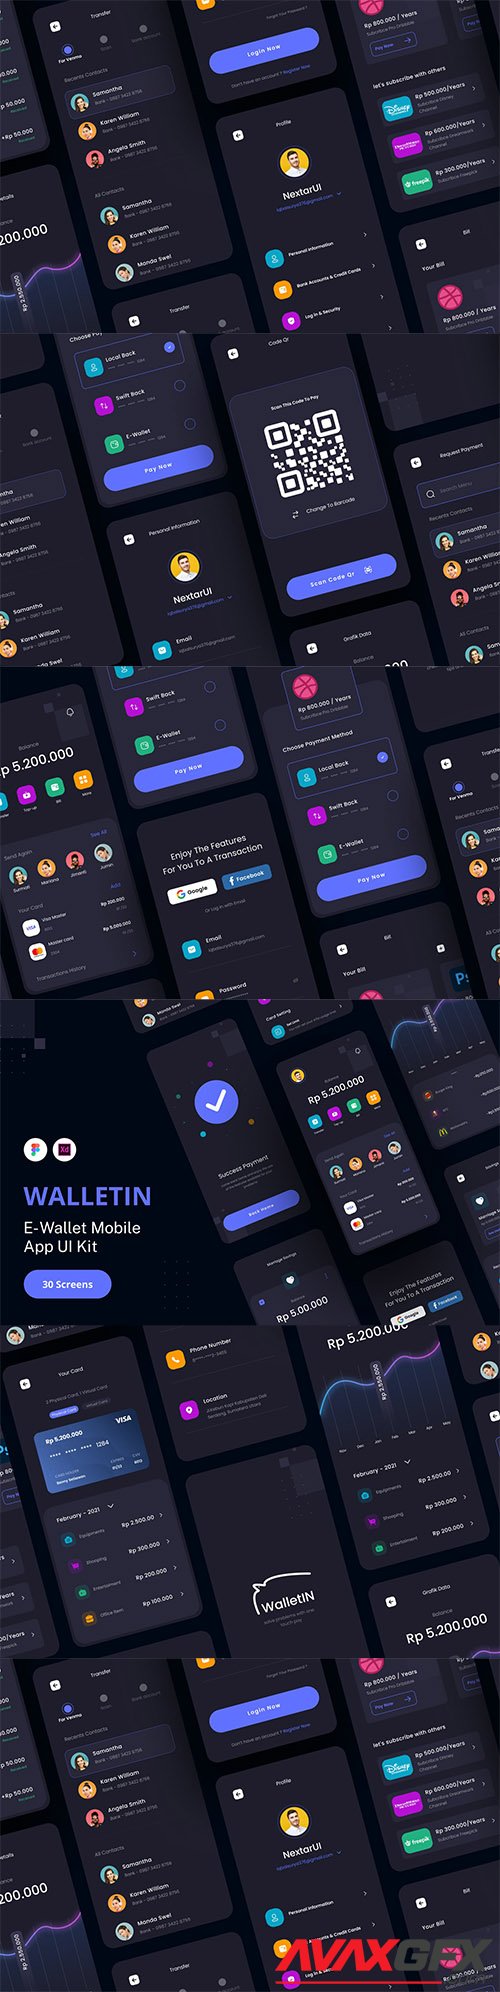 WalletIn - E-Wallet App